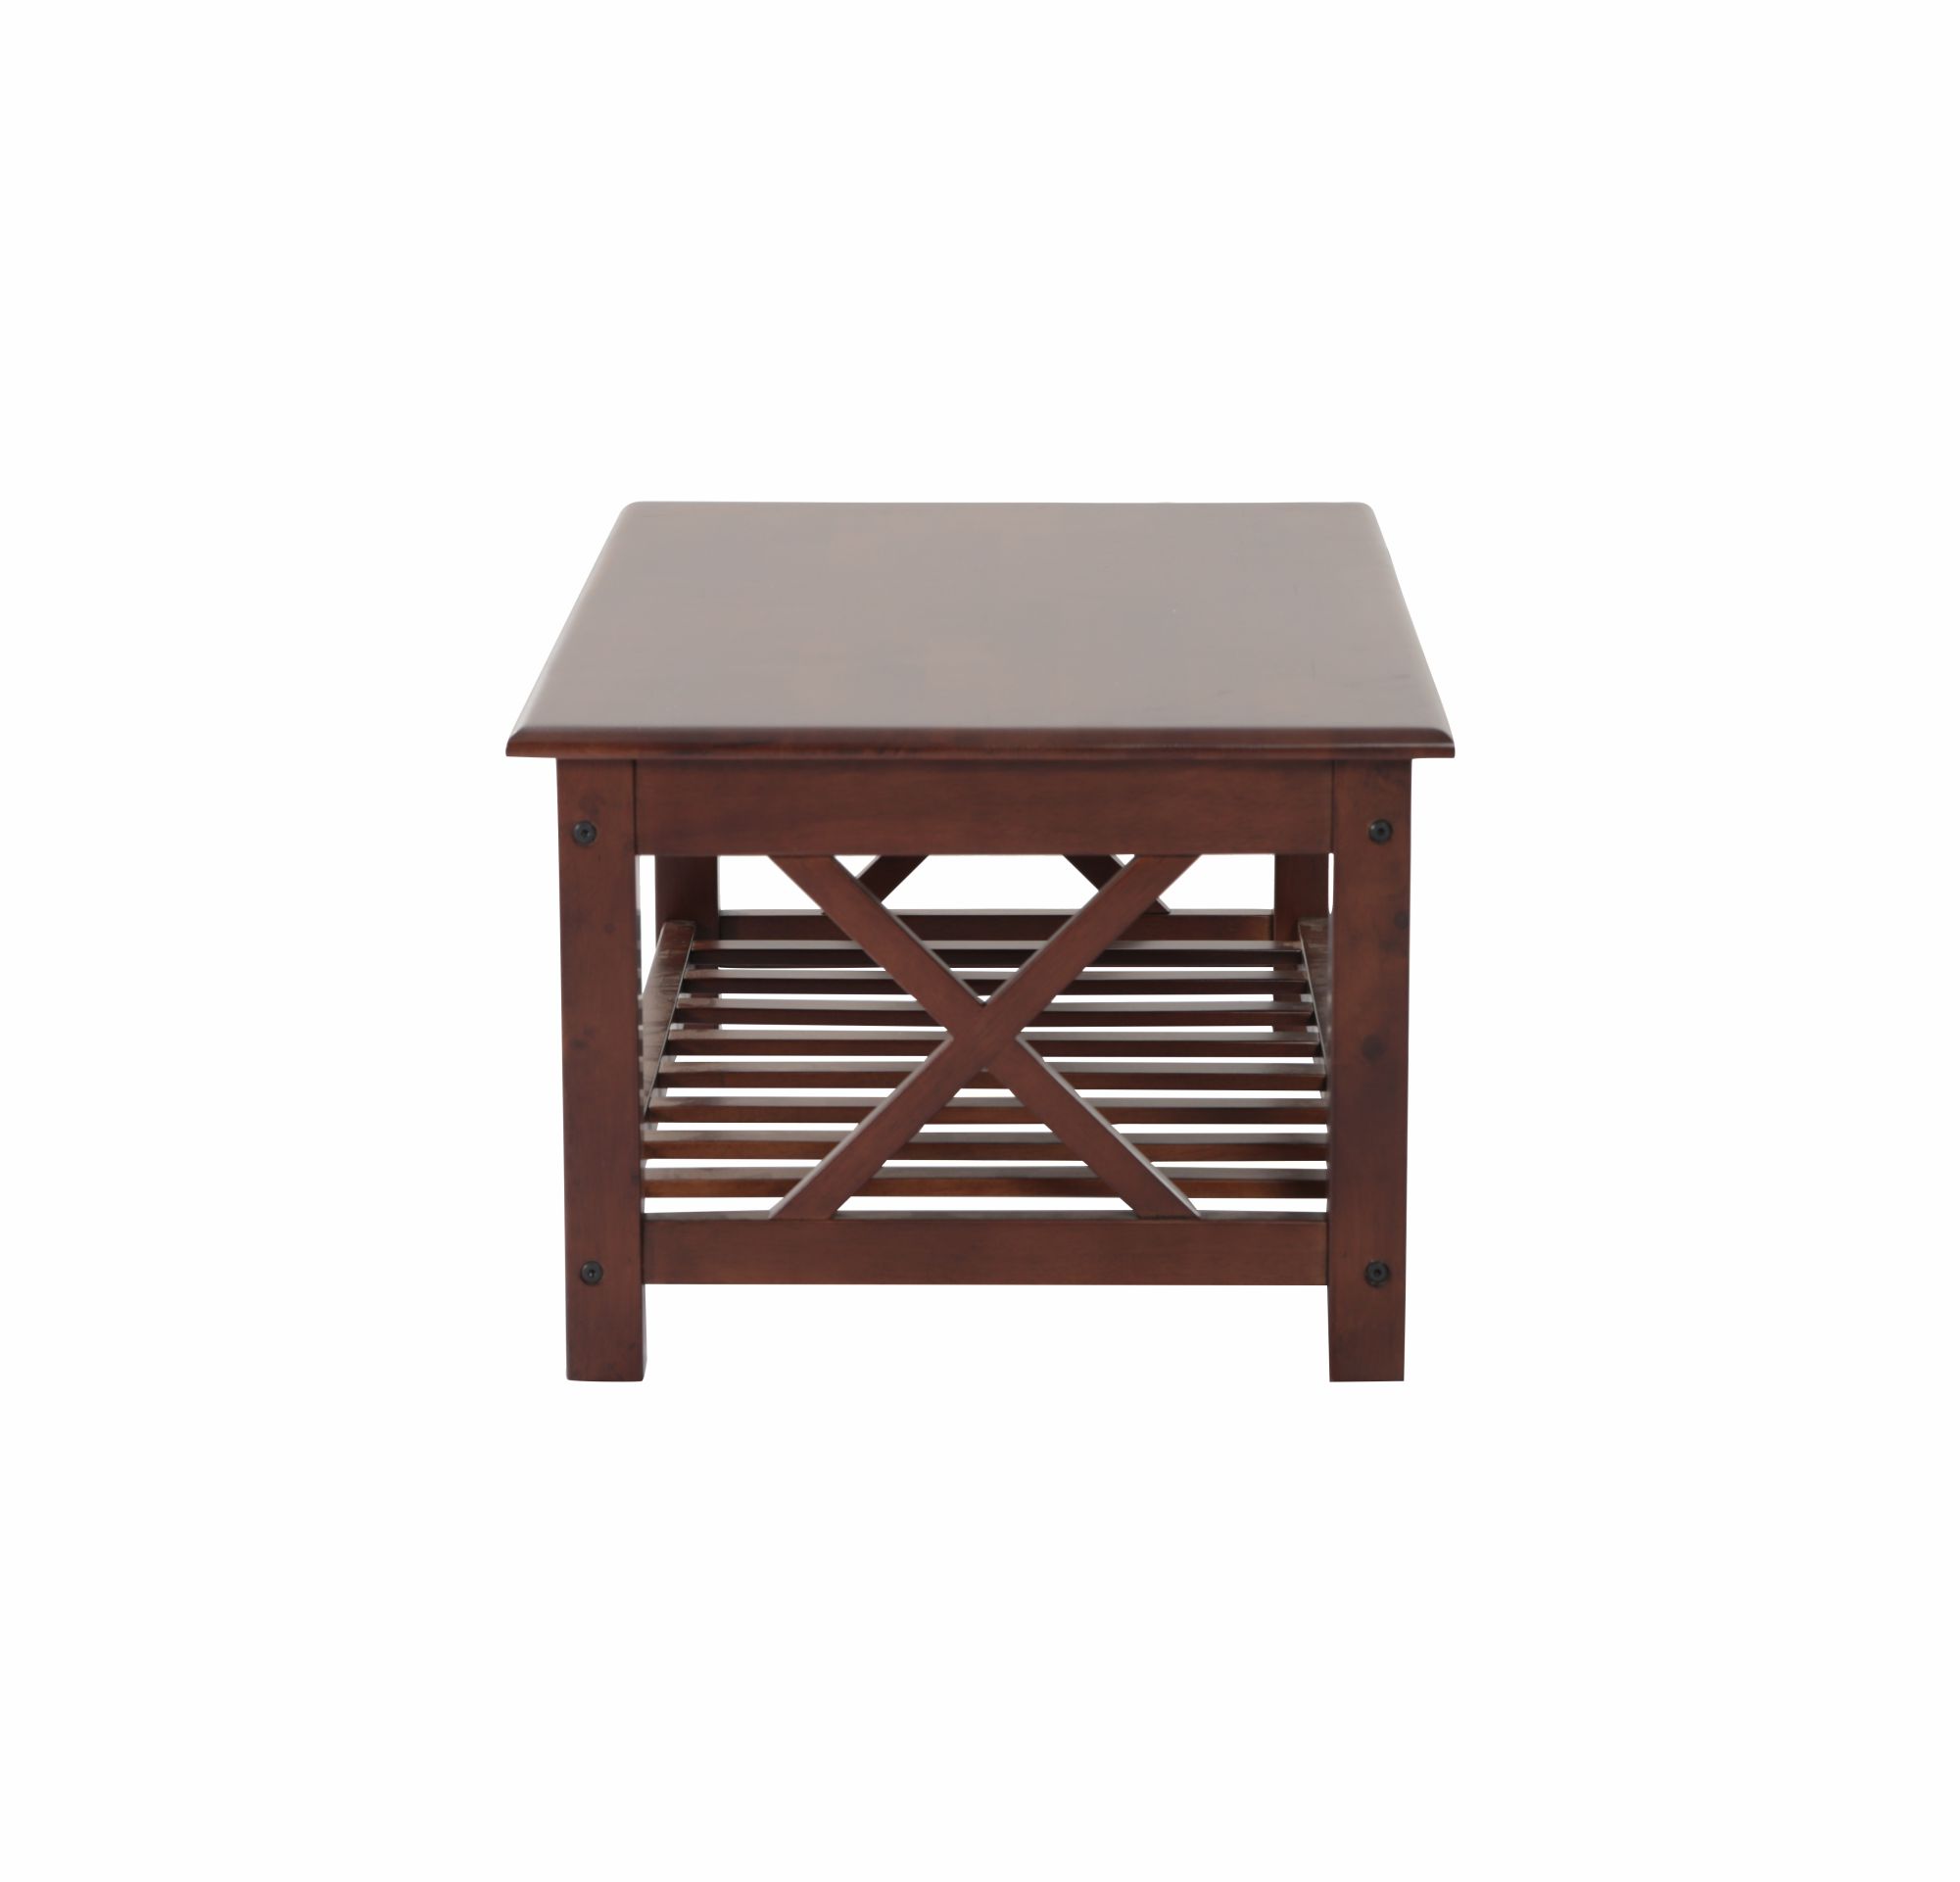 WSCL001-Wooden Coffee Table Larry-Dark Walnut